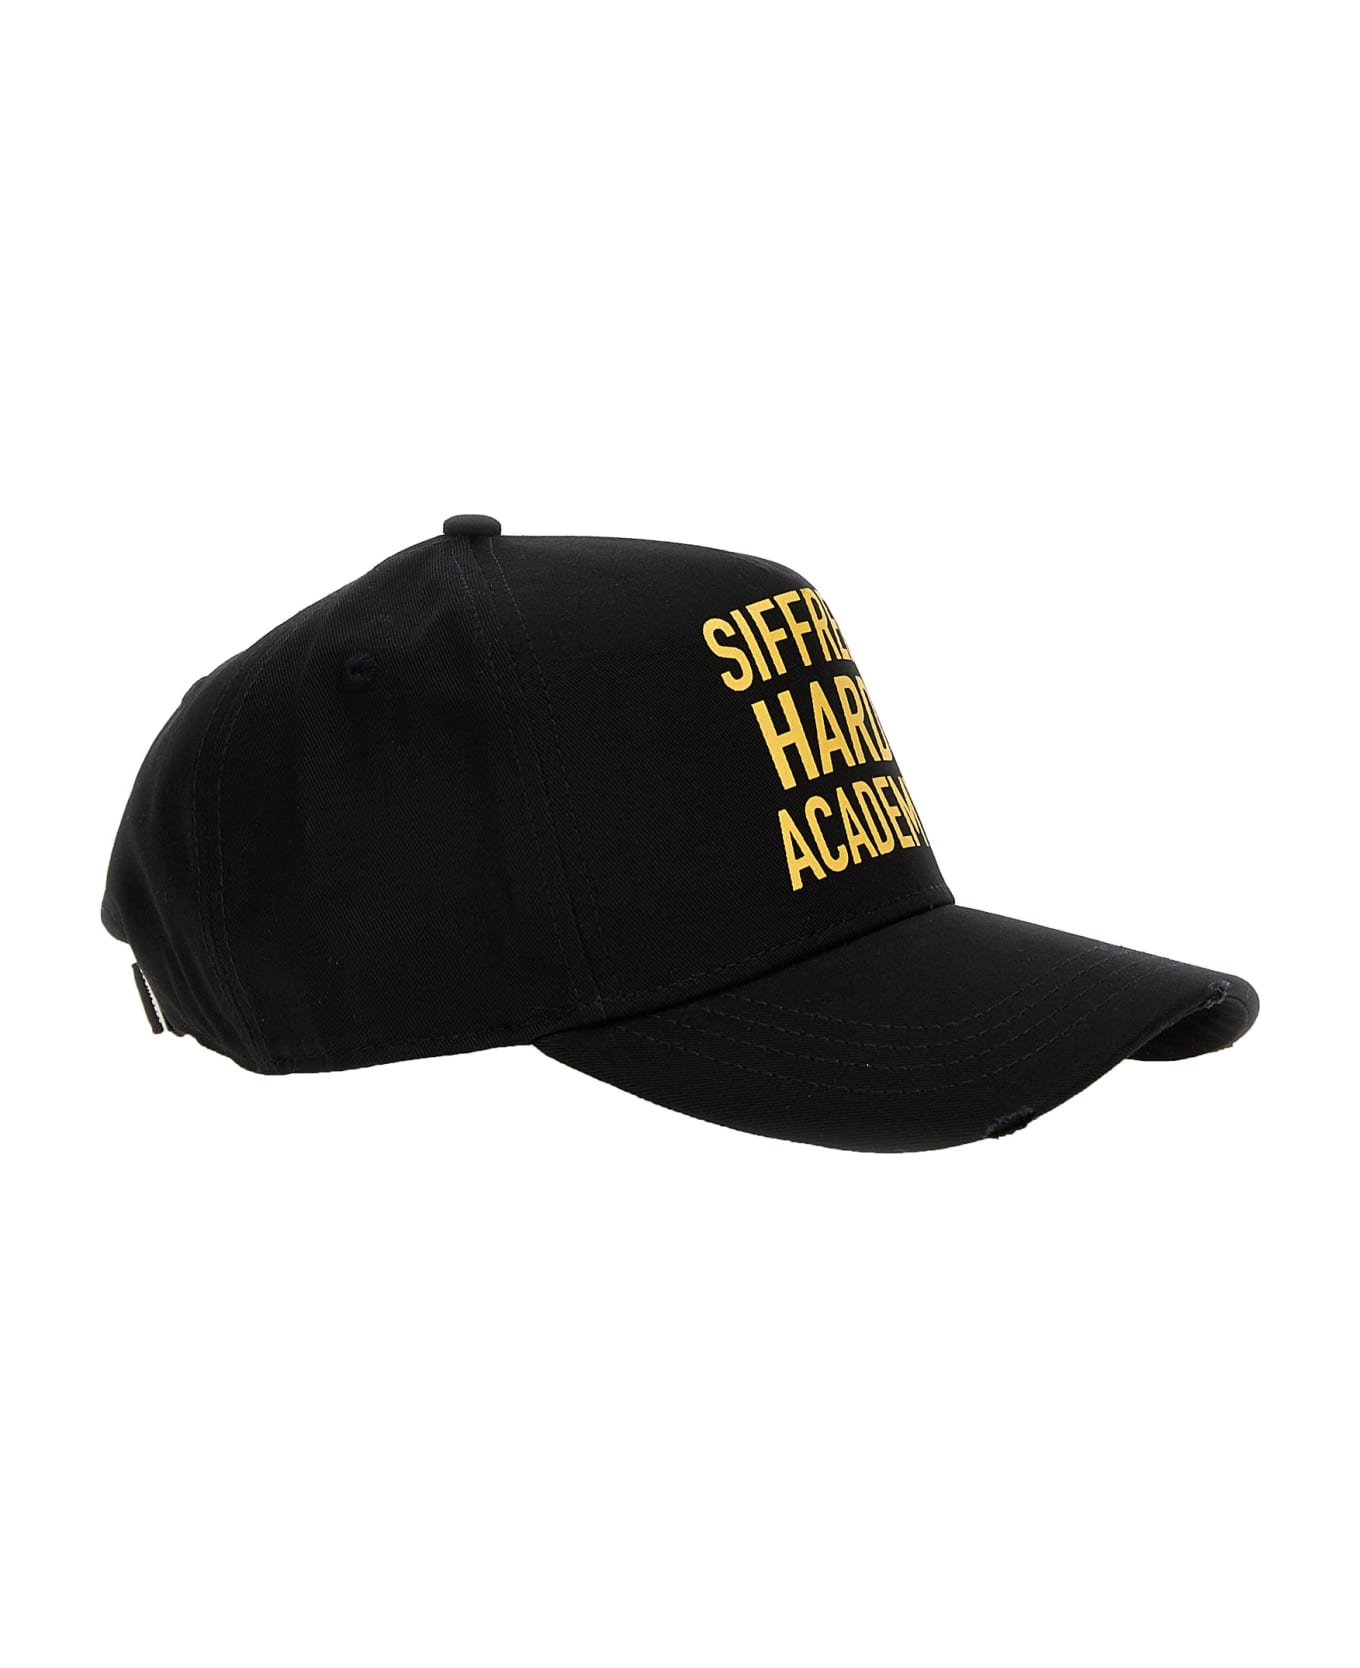 Dsquared2 Rocco Hat - Black 帽子